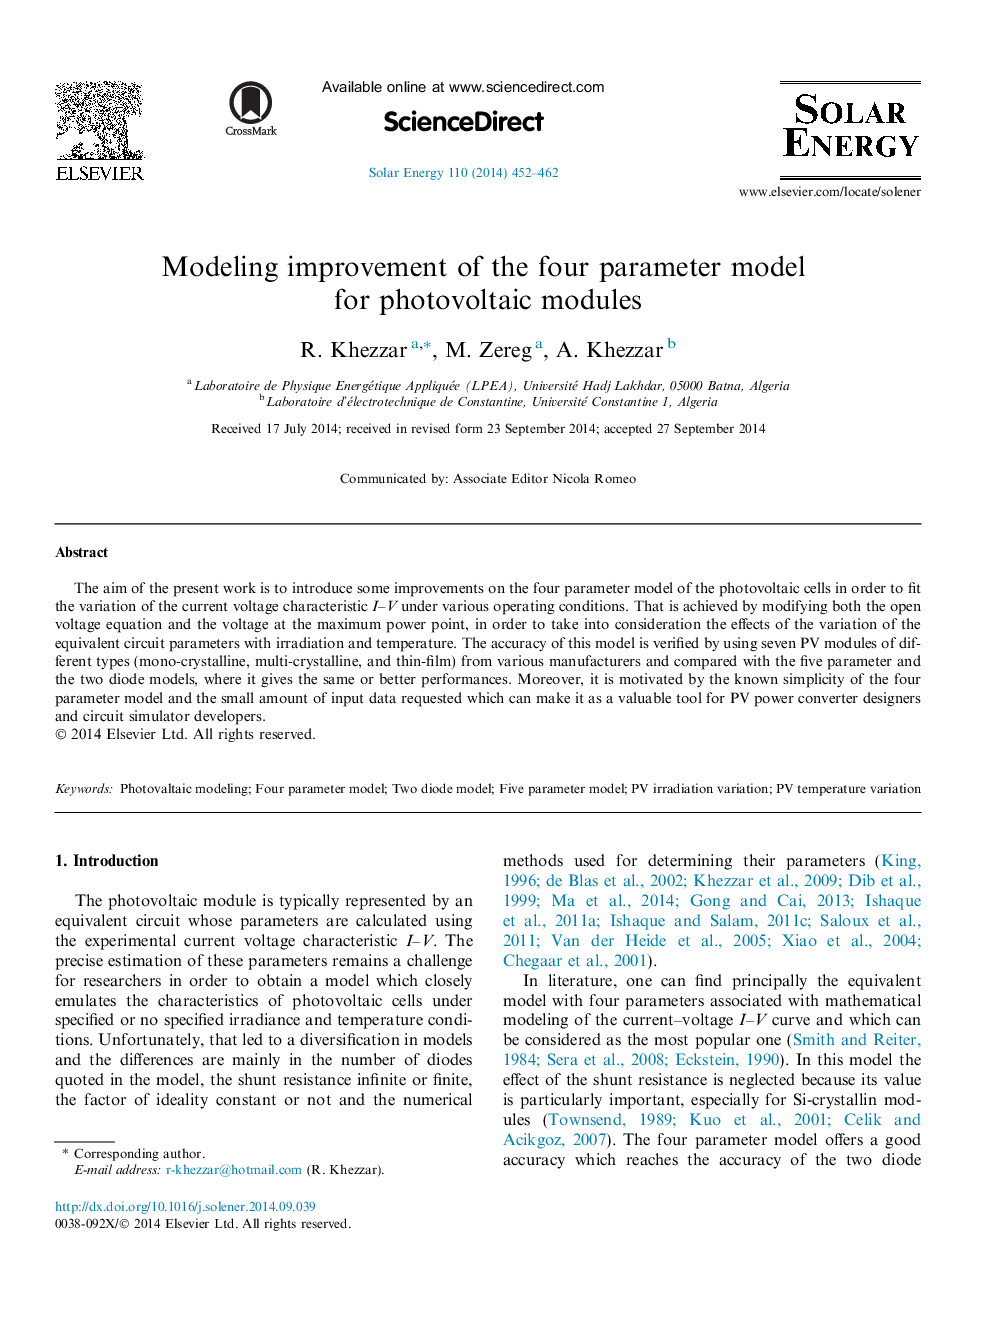 بهبود مدلسازی مدل چهار پارامتر برای ماژولهای فتوولتائیک 